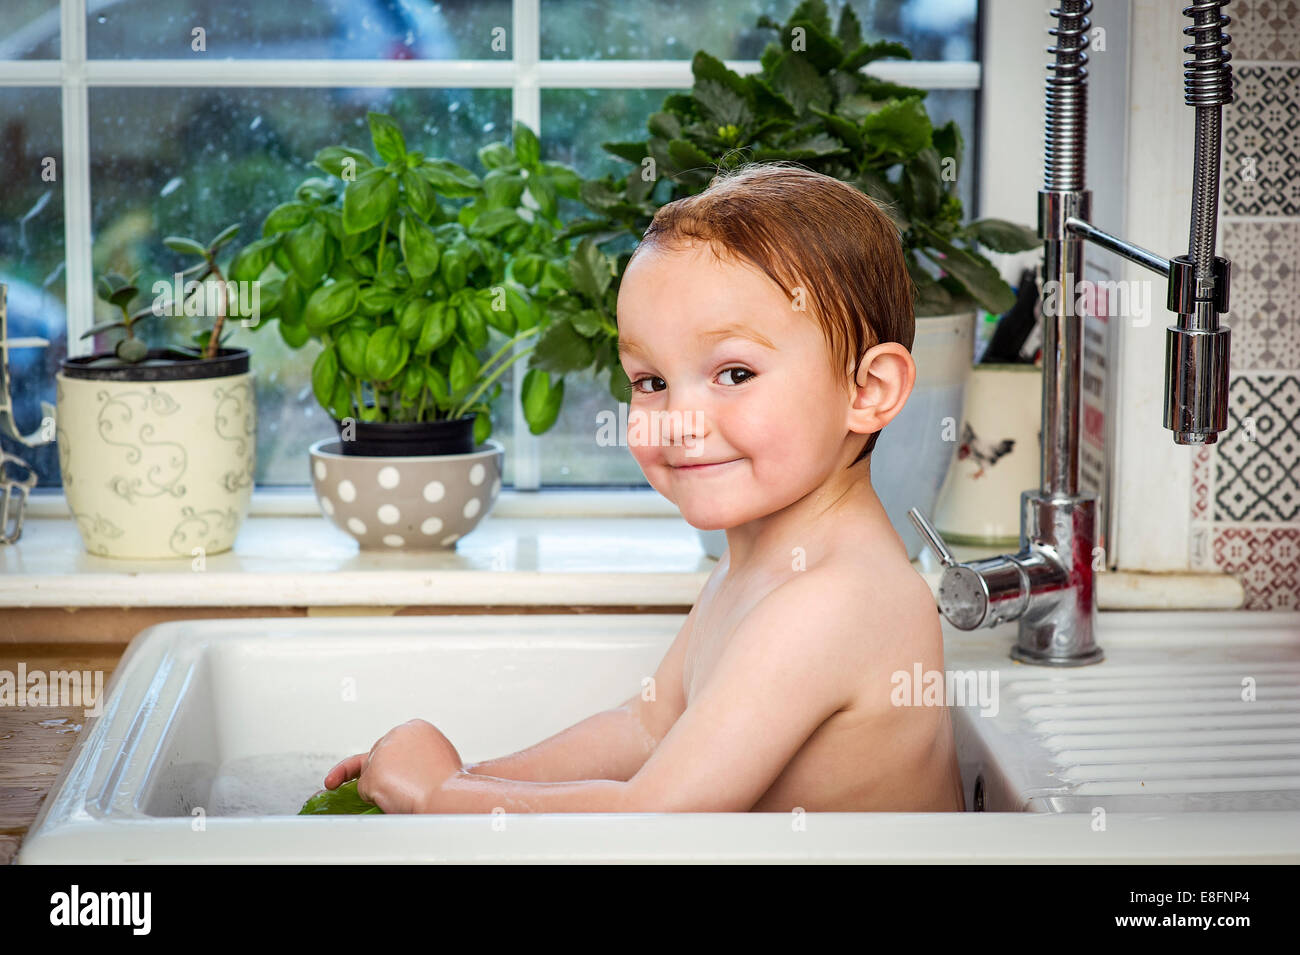 Ragazzo sorridente che prende il bagno nel lavandino della cucina Foto Stock